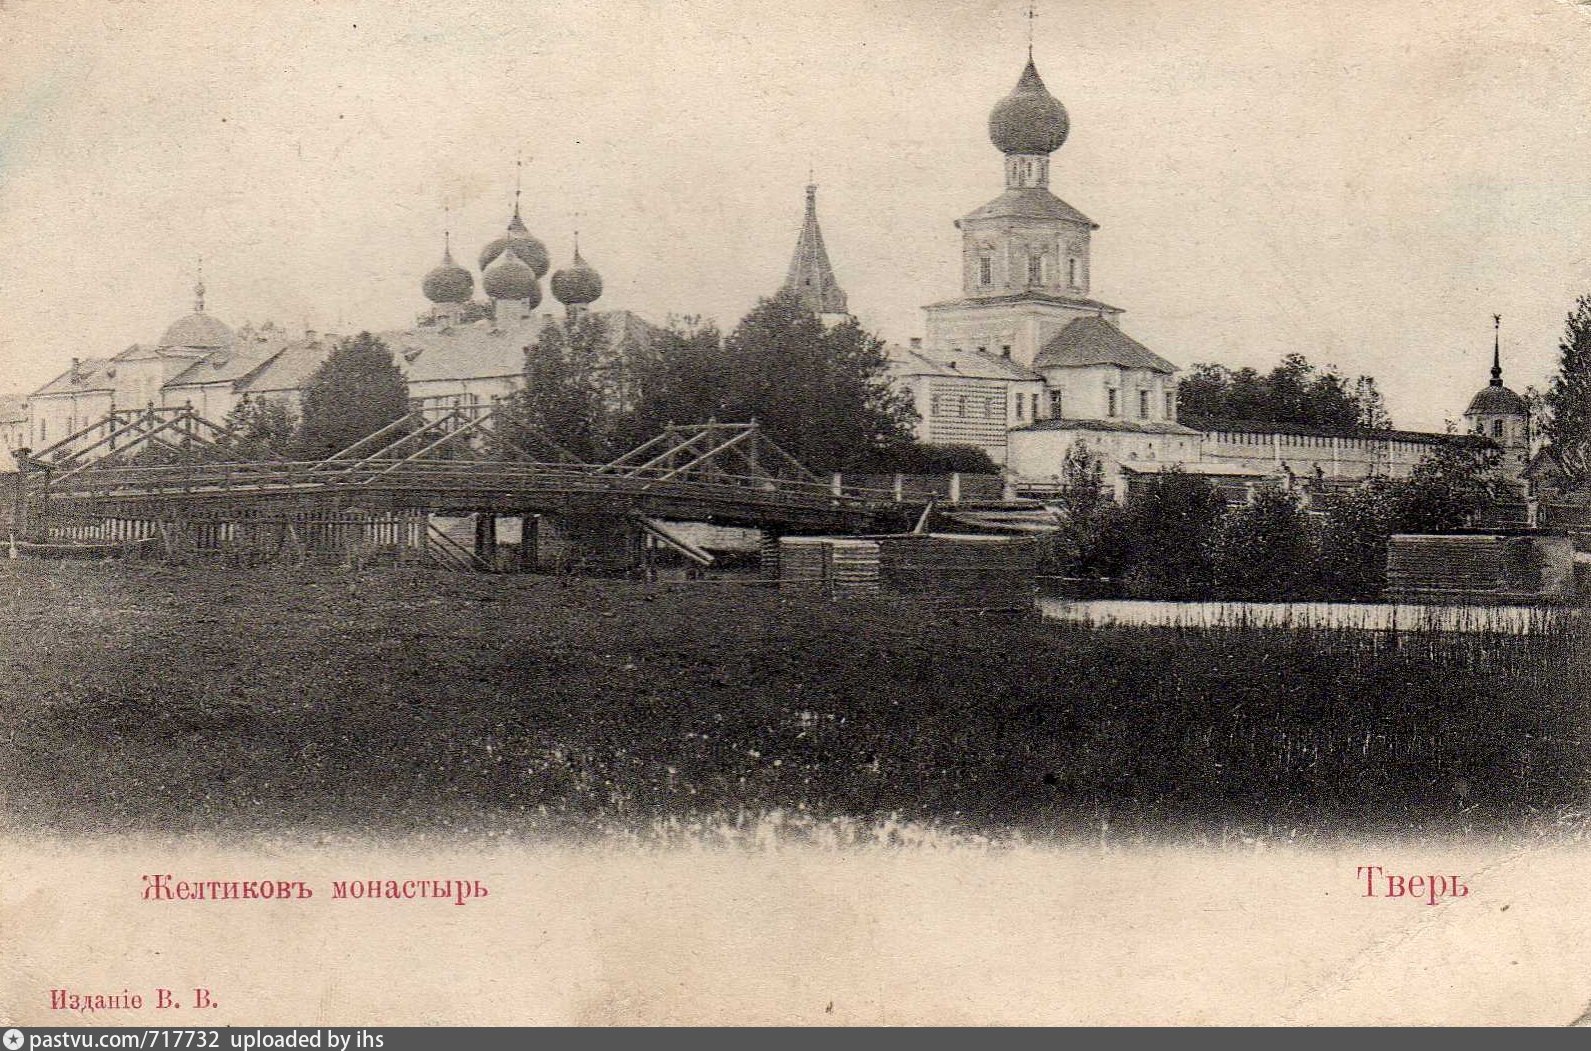 Желтиков монастырь Тверь